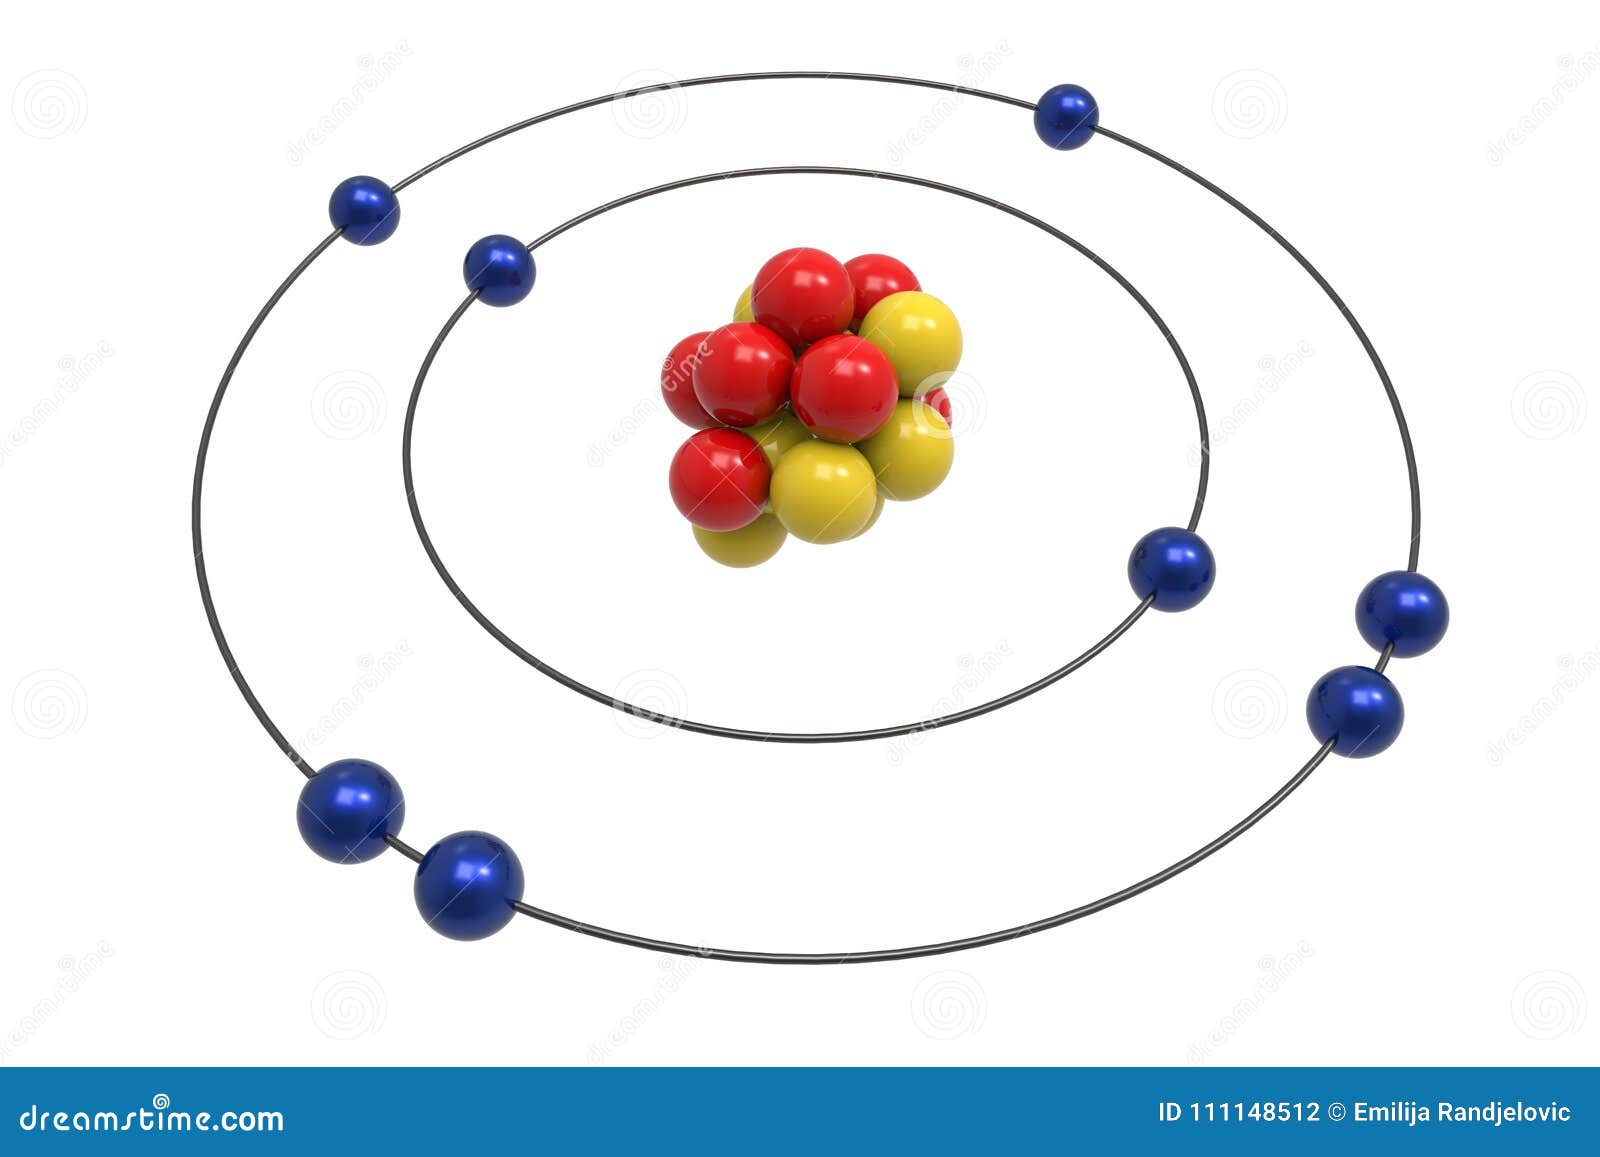 Arriba 48+ imagen modelo atomico de bohr del oxigeno